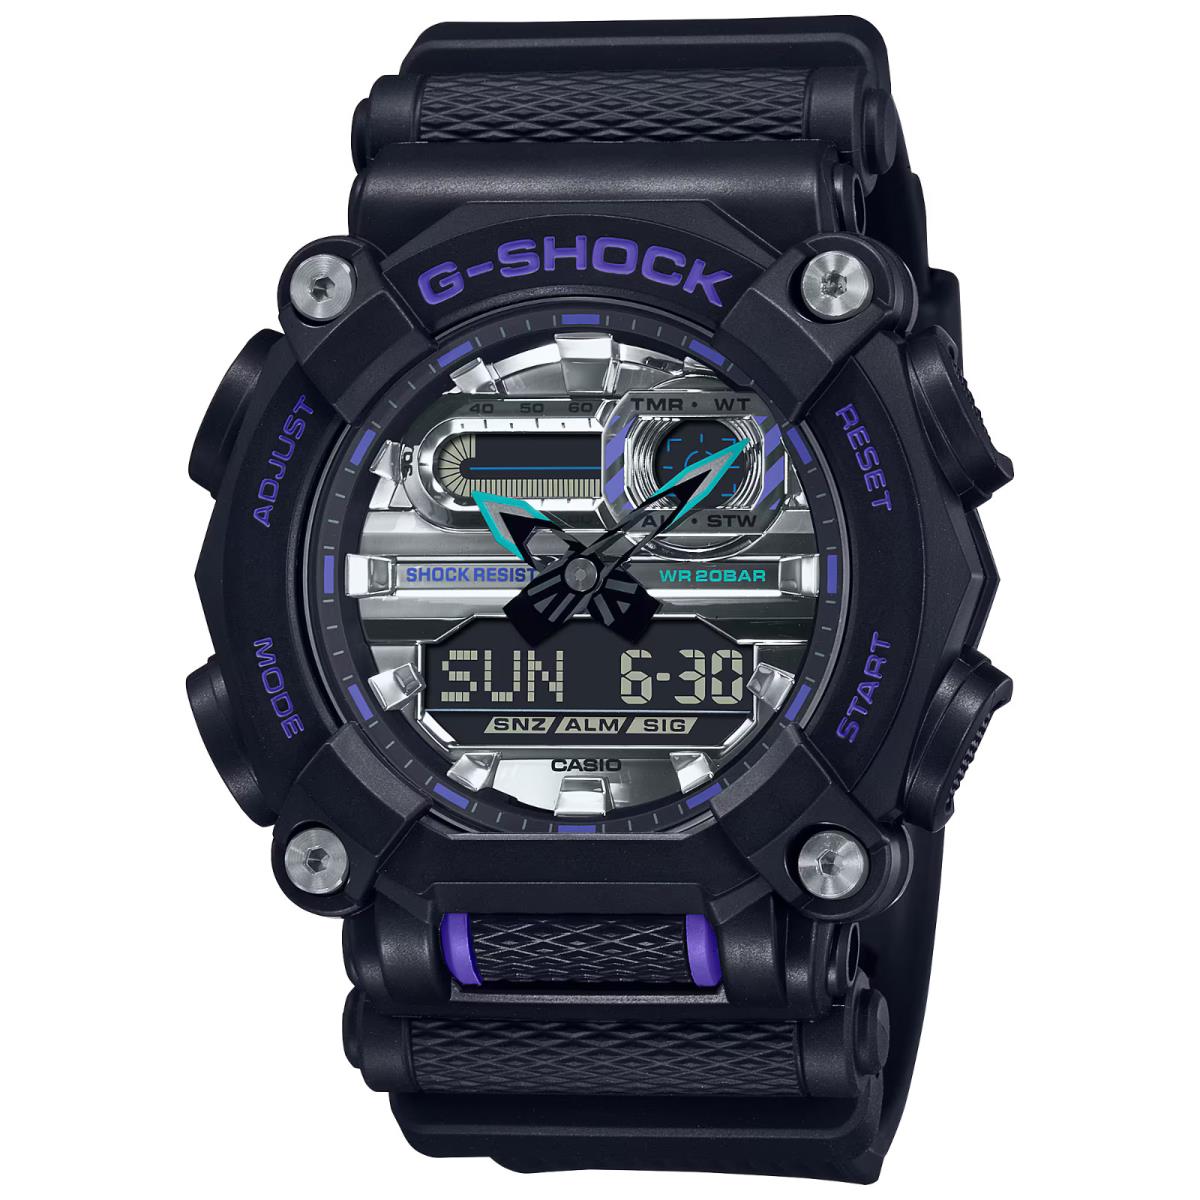 Casio G-shock Analog-digital GA-900 Garish Series Black Resin Watch GA900AS-1A